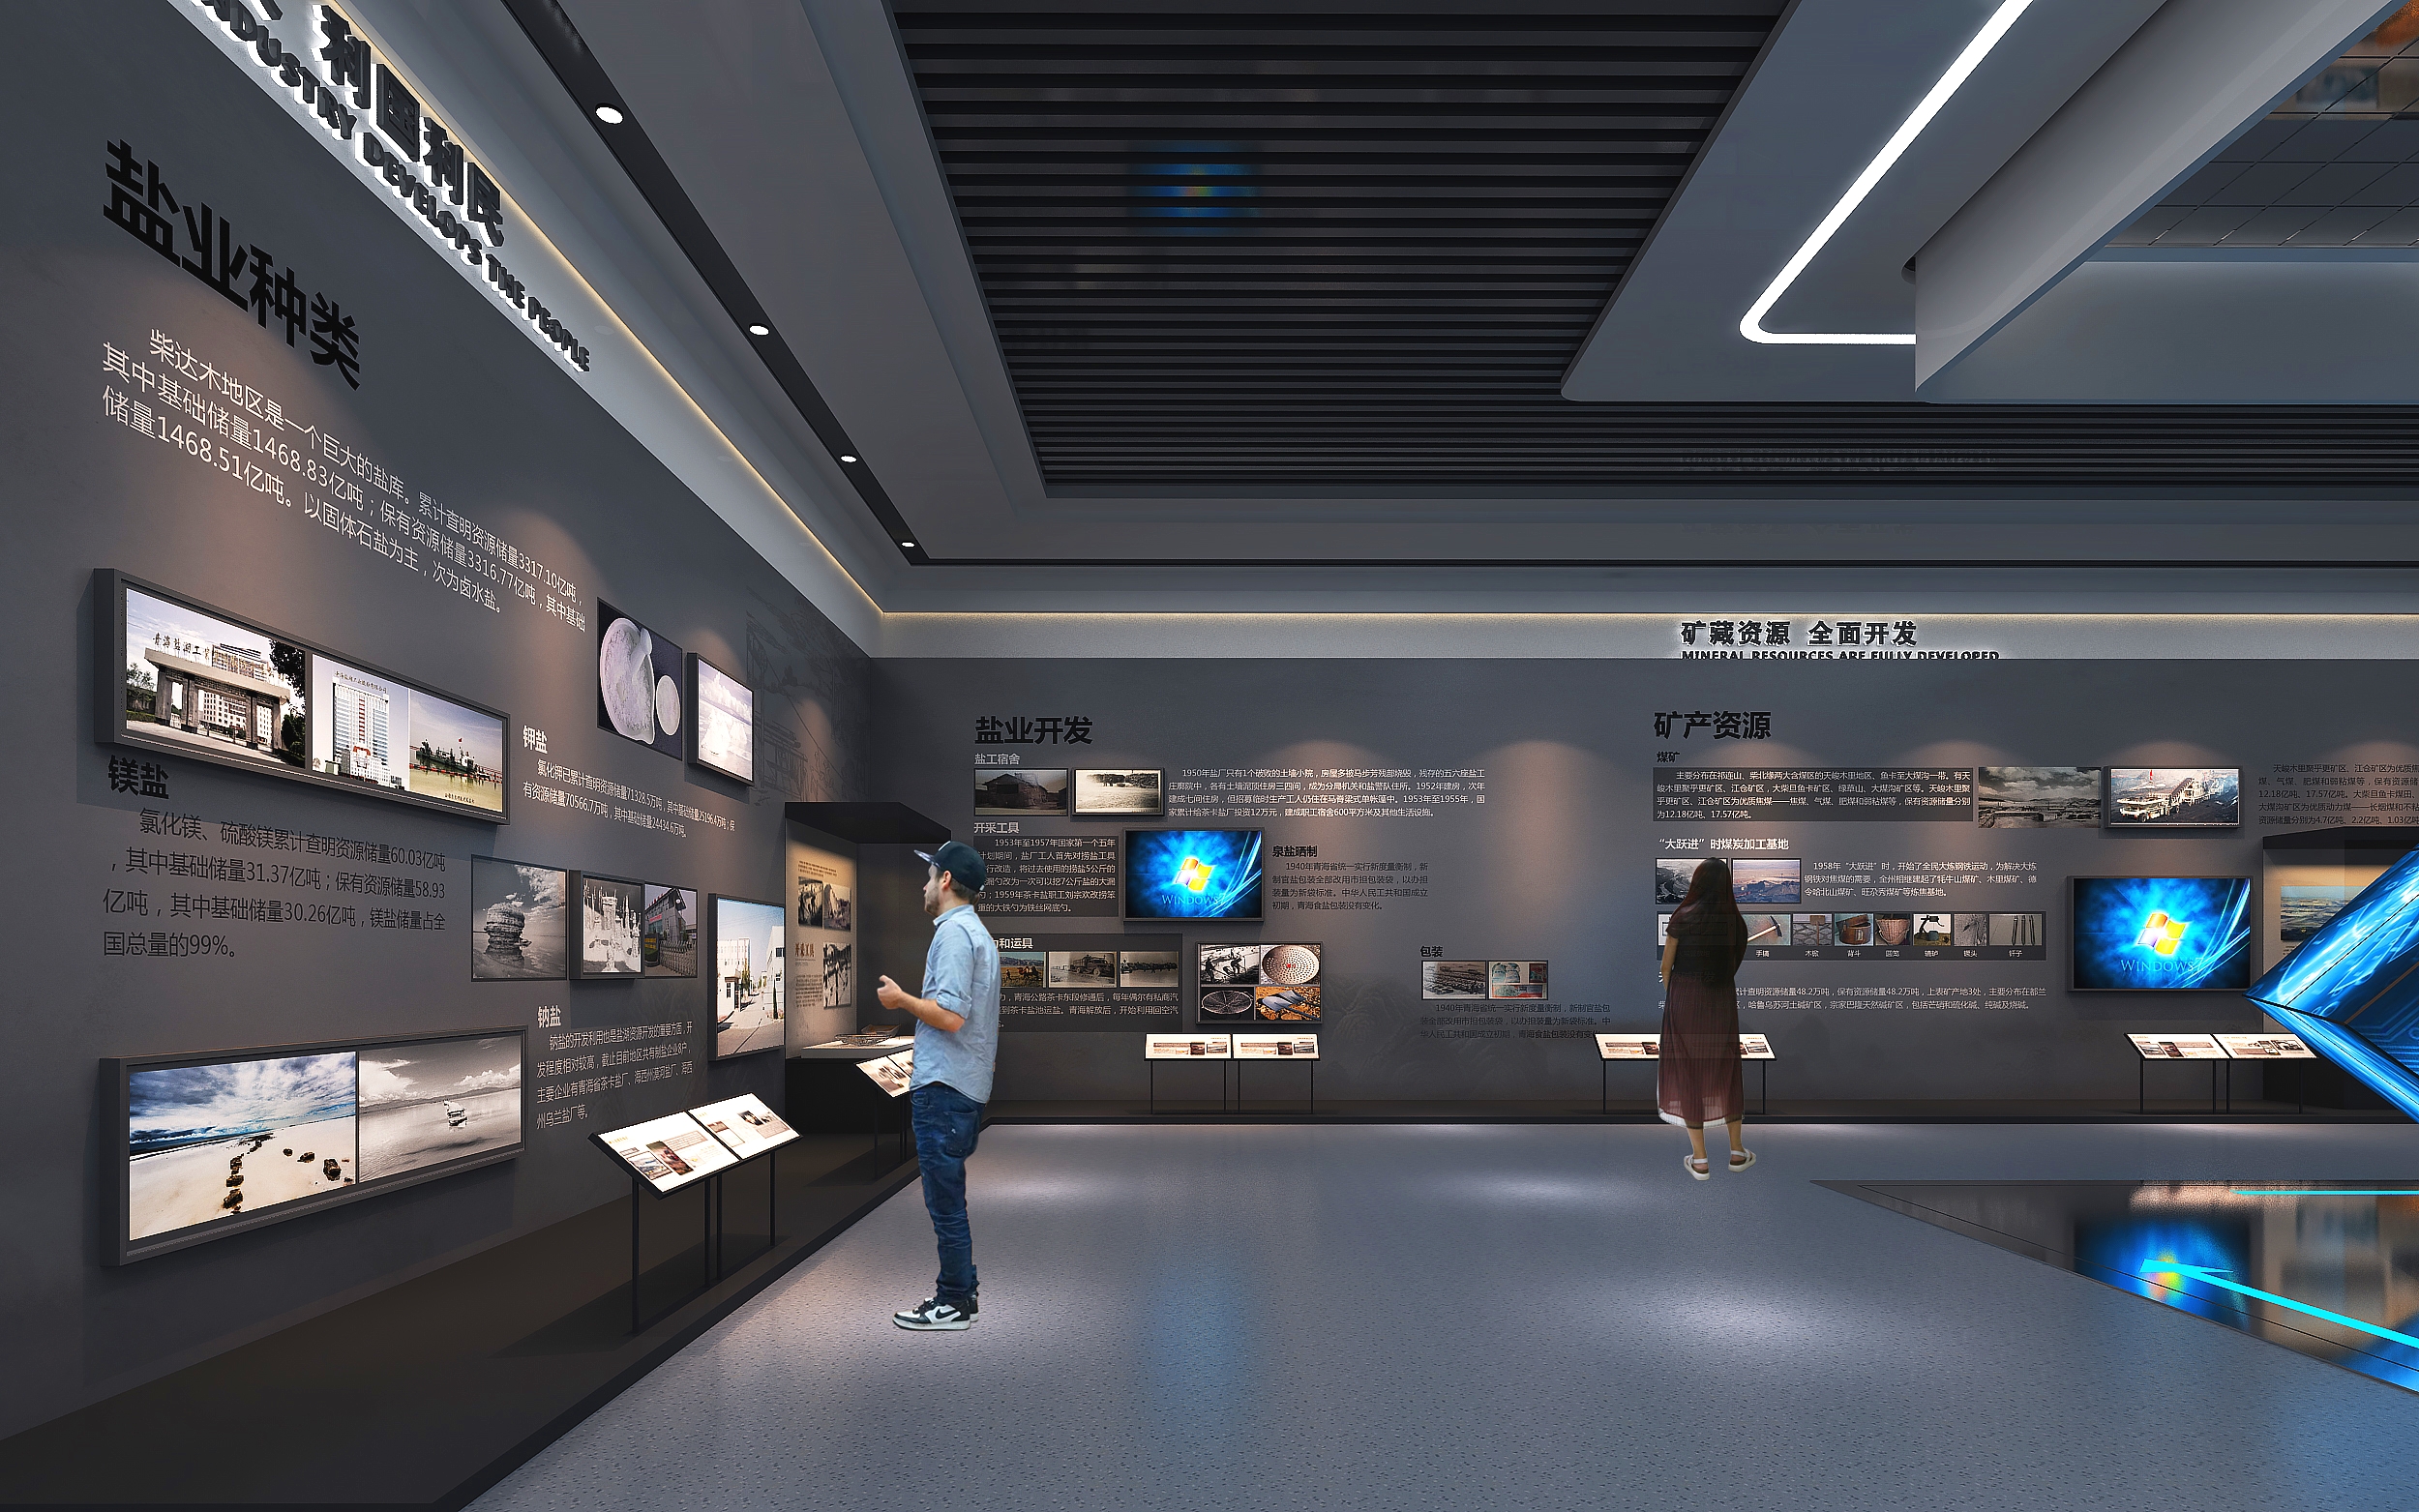 怎么样考虑适合东莞南城企业文化展厅展馆的设计风格?